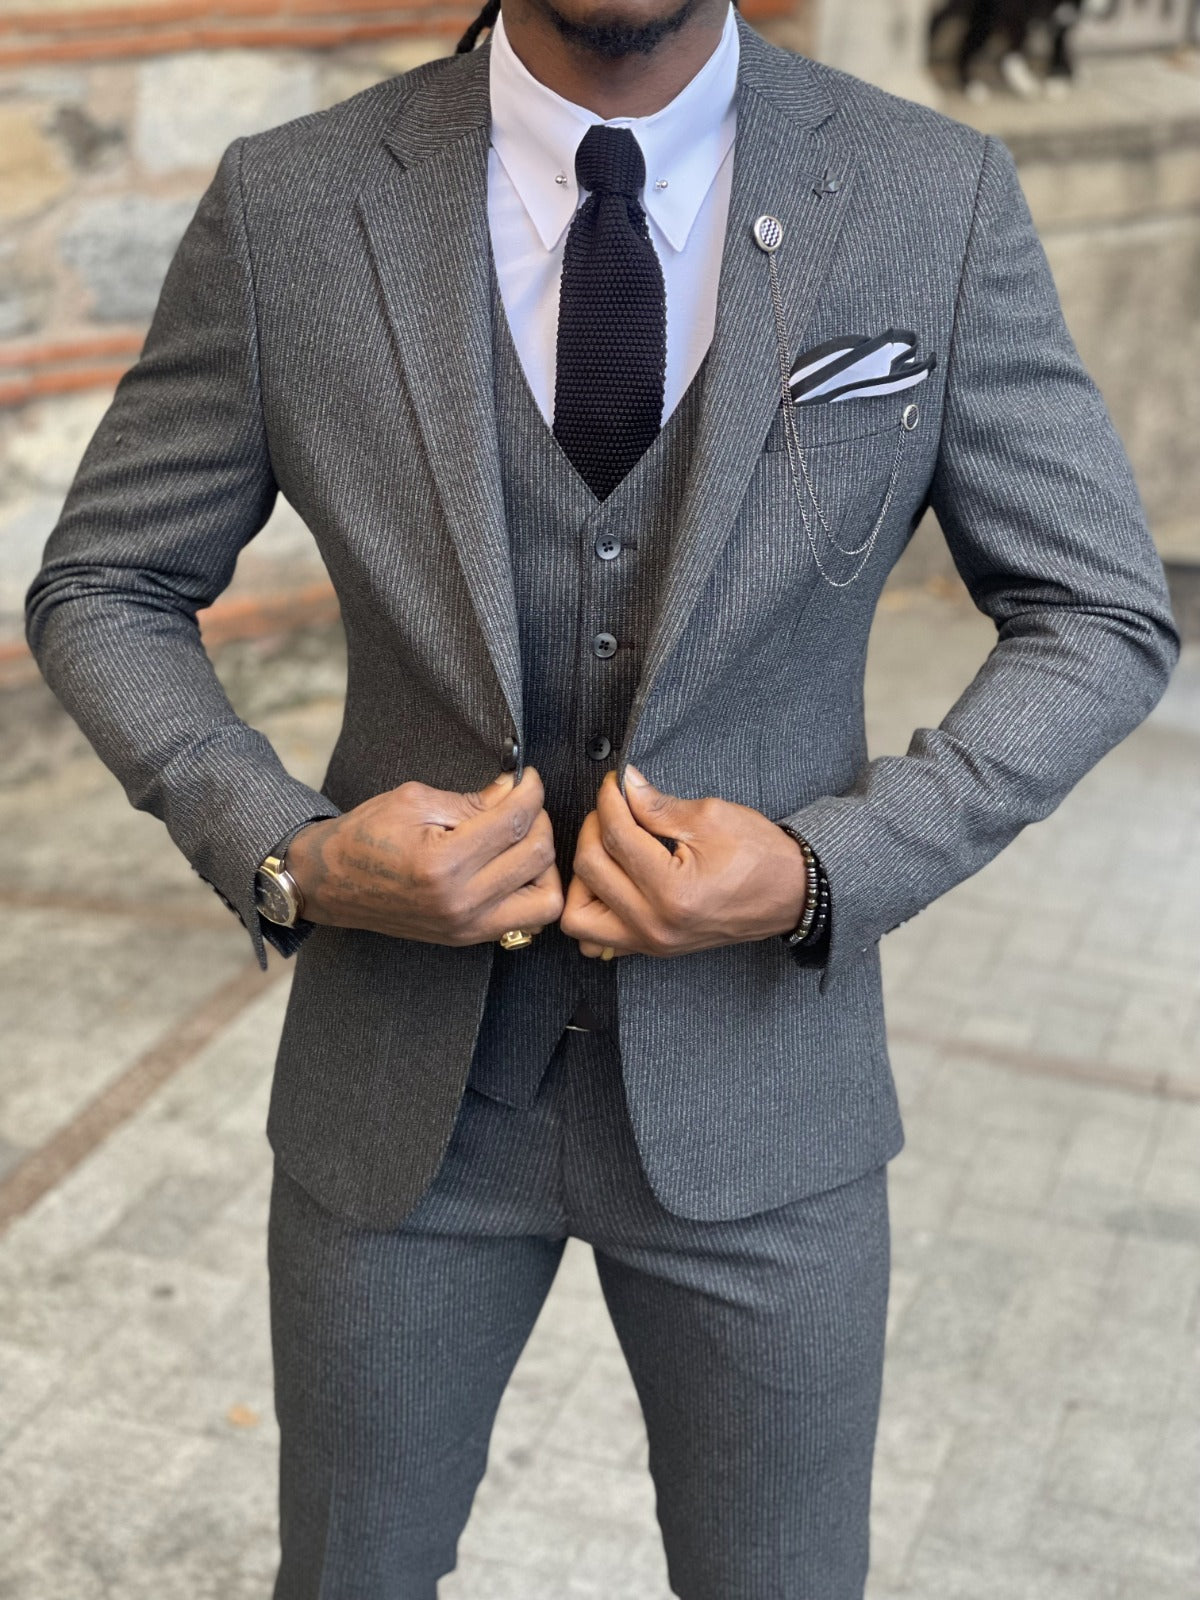 Intro Mens Suit Color, How to Choose a Men's Suit Color